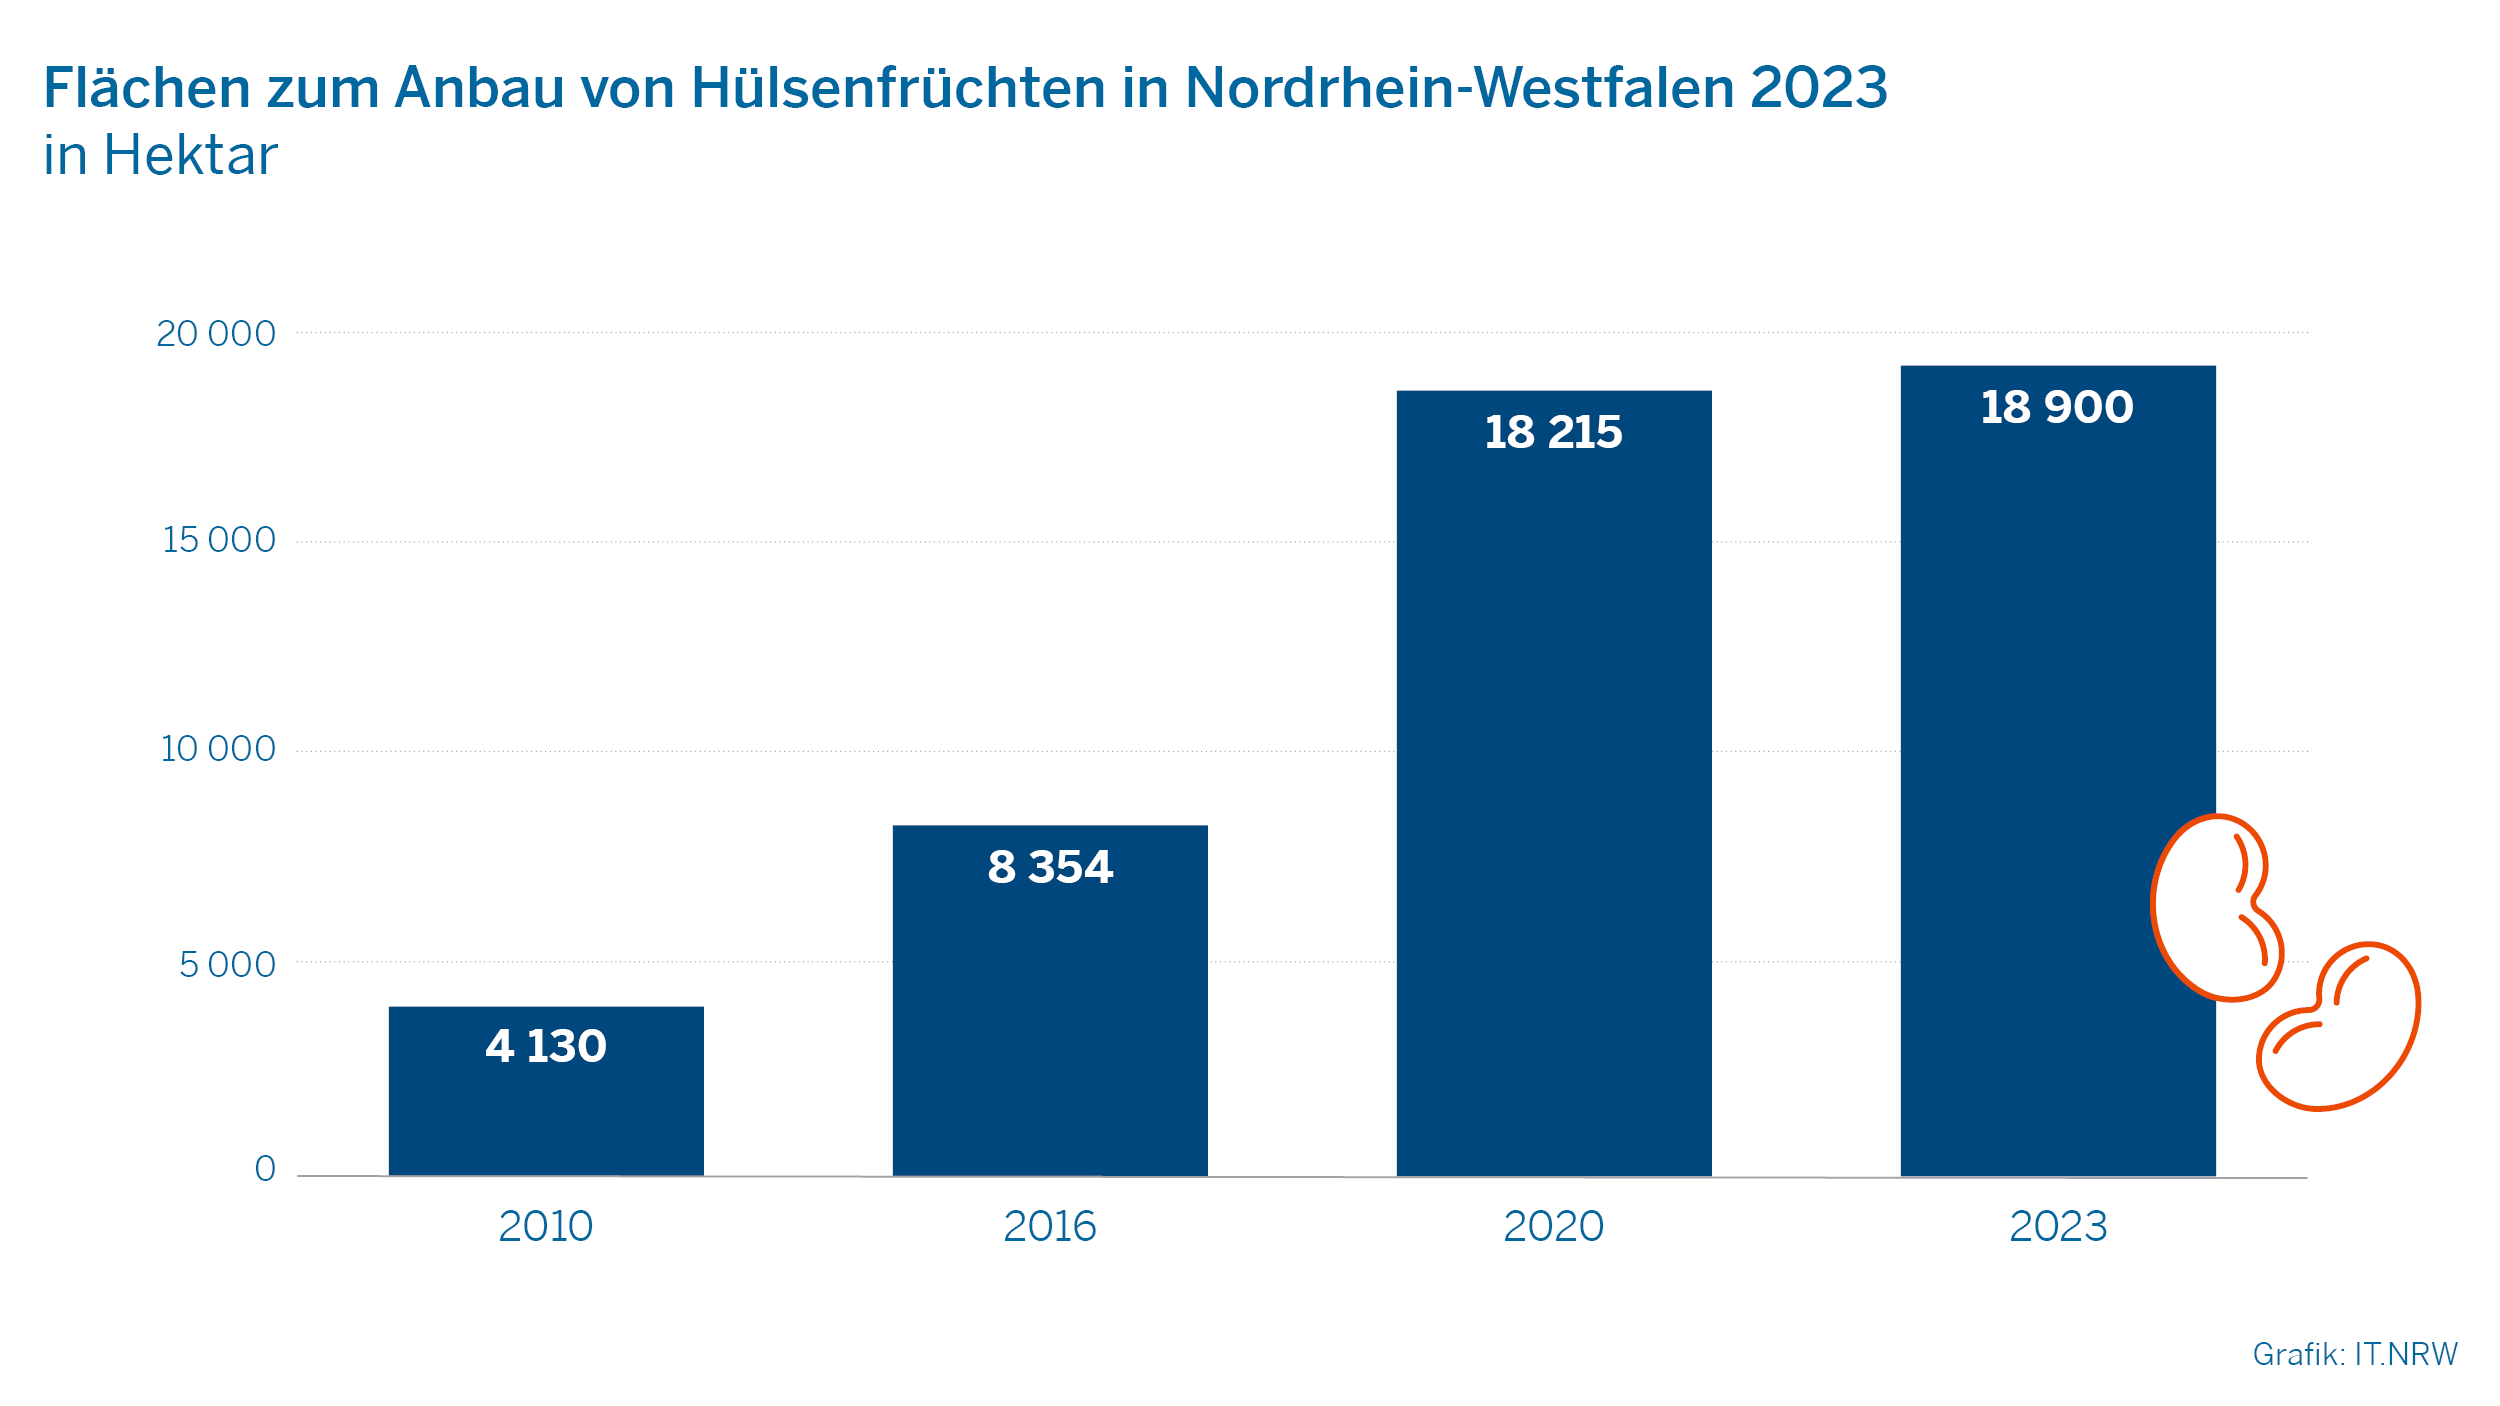 Flächen zum Anbau von Hülsenfrüchten in Nordrhein-Westfalen 2023